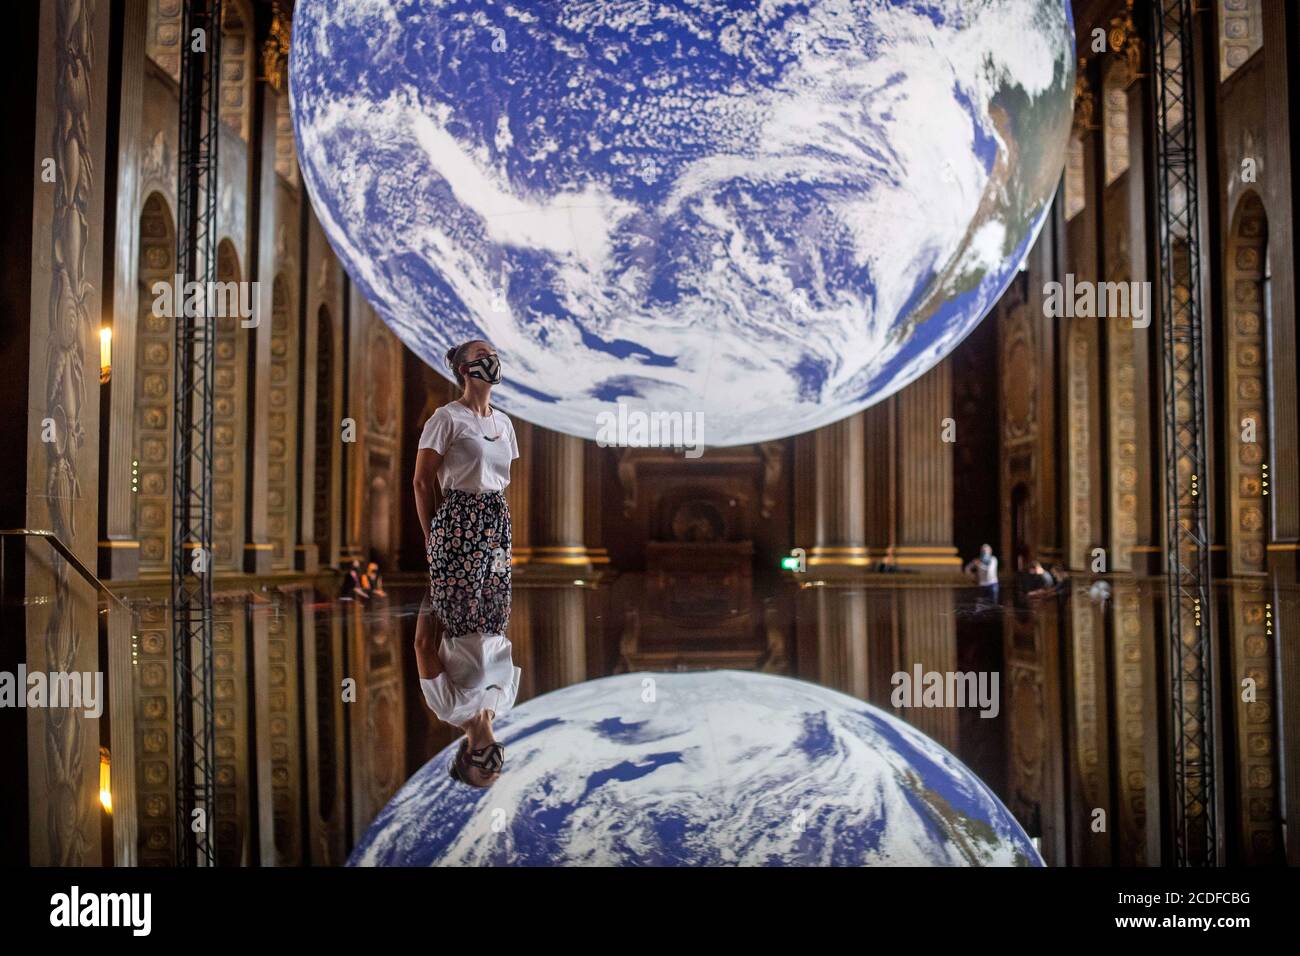 Ein Mitarbeiter betrachtet Luke Jerrams Kunstwerk Gaia, eine Nachbildung des Planeten Erde, die mit detaillierten NASA-Bildern der Erdoberfläche erstellt wurde, wie es im Rahmen des Greenwich+Docklands International Festival 2020 in der Painted Hall des Old Royal Naval College in Greenwich, London, gezeigt wird. Stockfoto